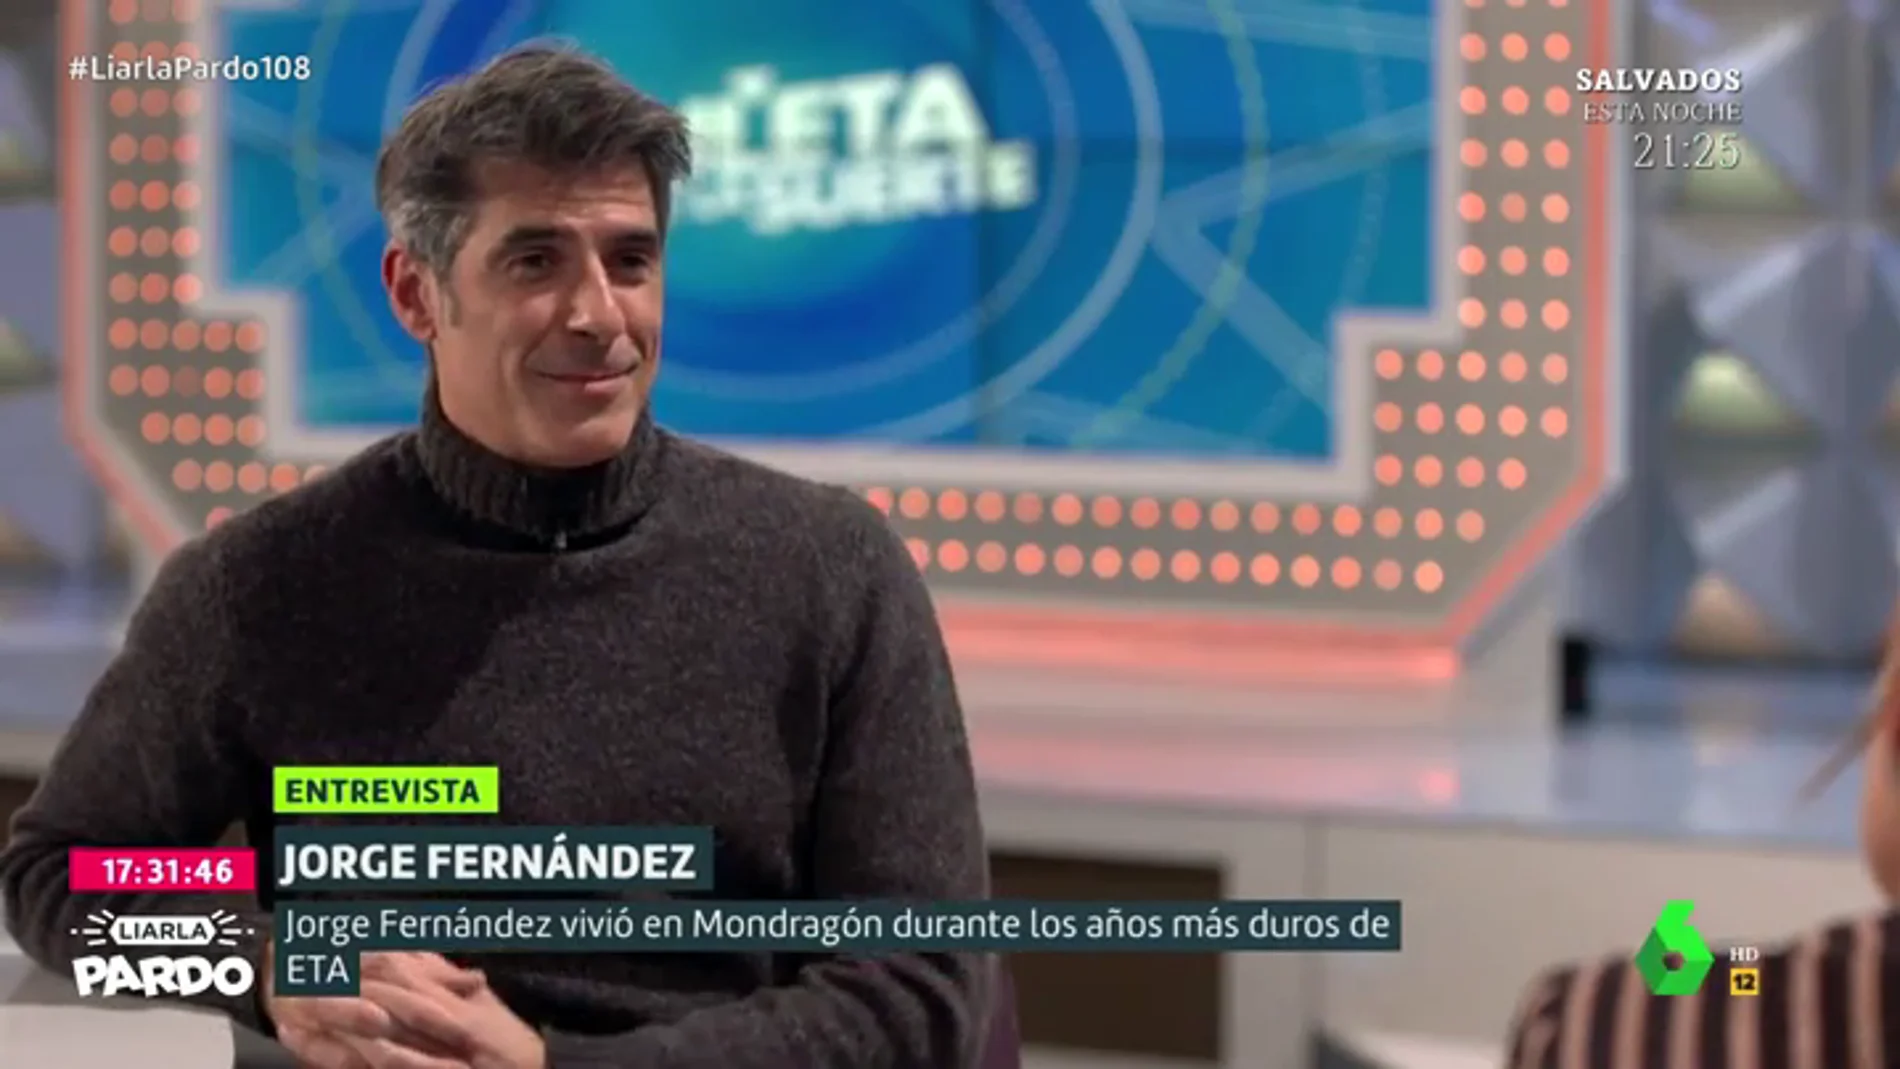 Jorge Fernández recuerda cómo vivió los años más duros de ETA: "Explotaron dos bombas debajo de mi casa"